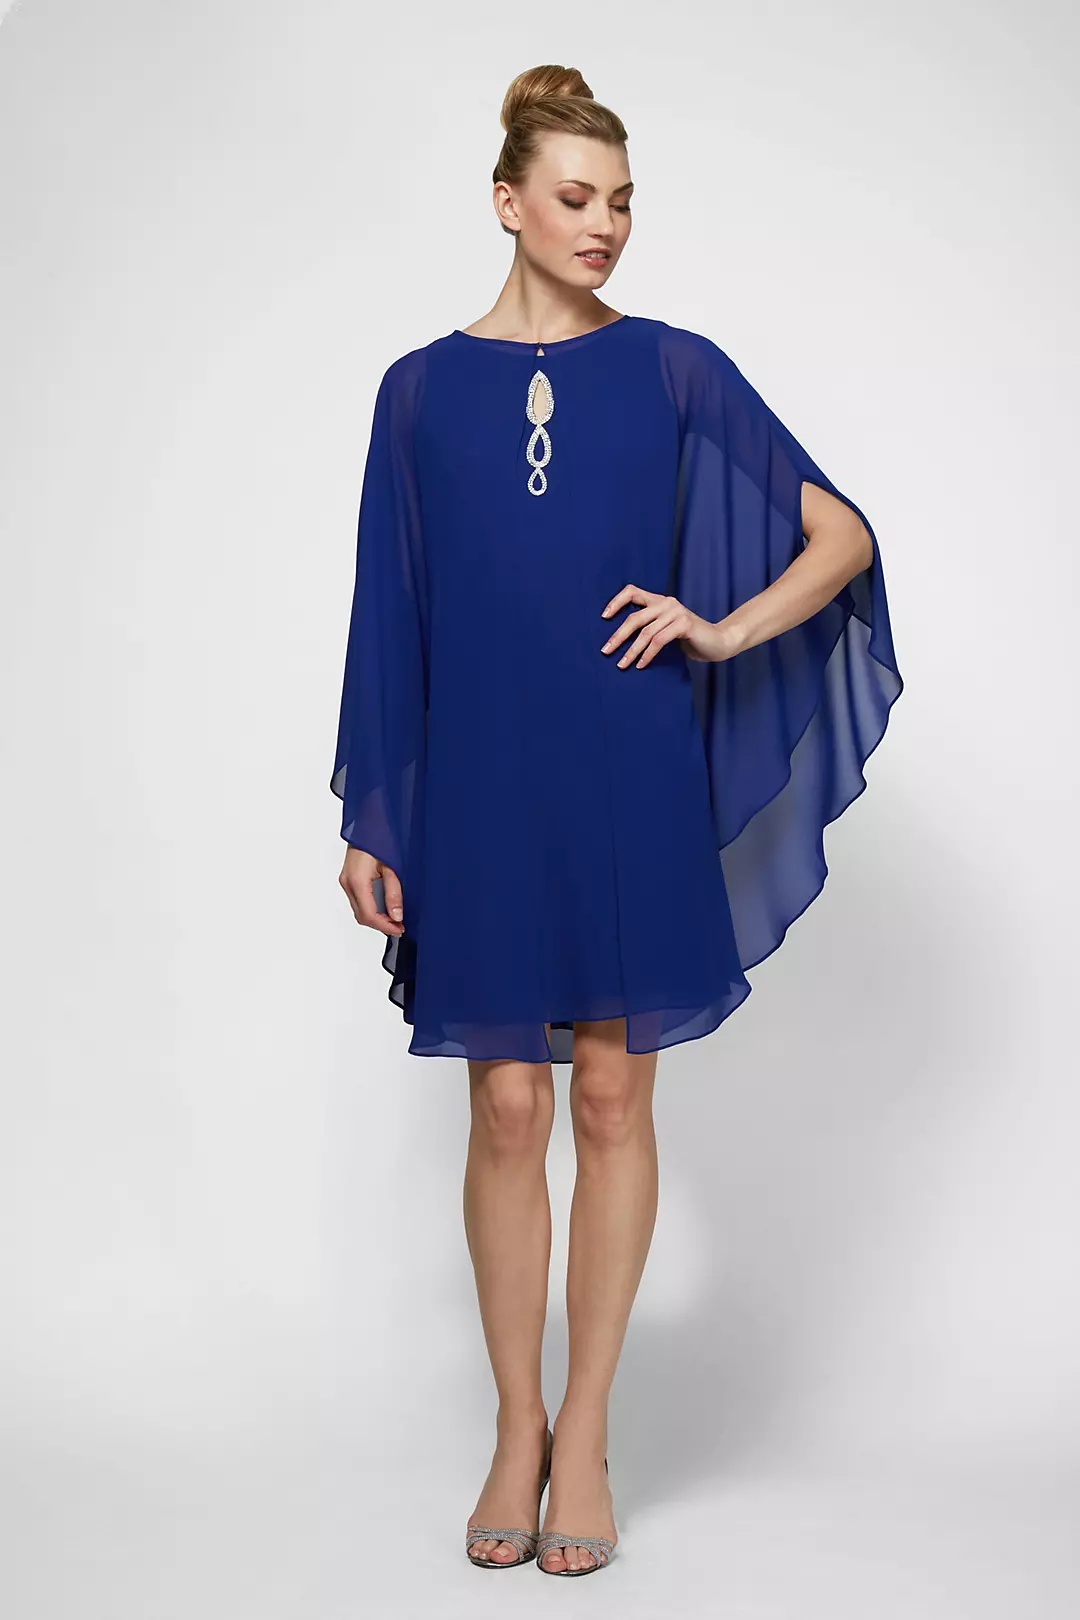 Crystal Keyhole Chiffon Dress with Matching Cape Image